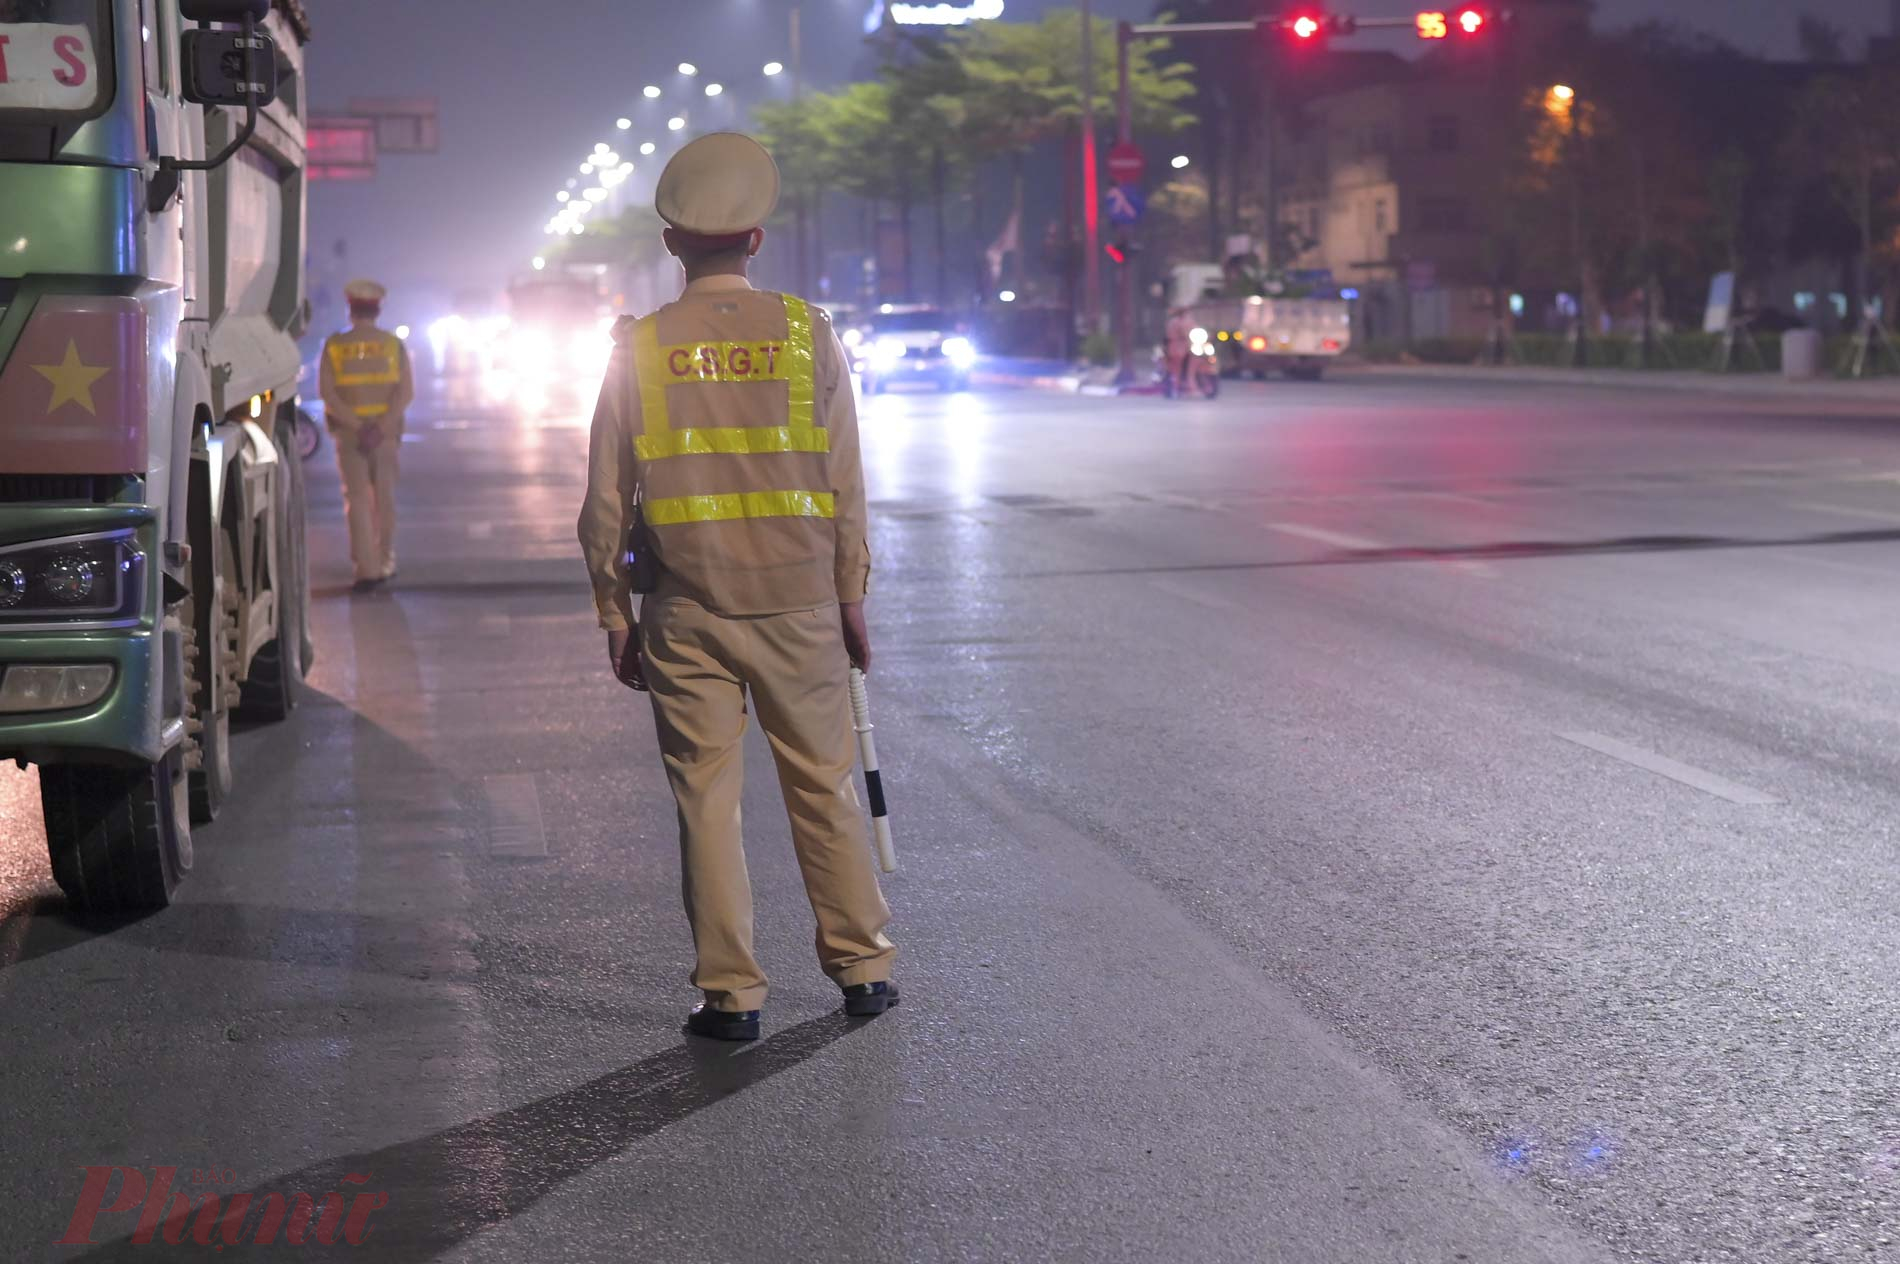 20 giờ ngày 23/03, Tổ công tác Đội CSGT số 5 (Phòng Cảnh sát Giao thông Công an Hà Nội) đã tổ chức ra quân kiểm tra, xử lý các phương tiện cơ giới có dấu hiệu cơi nới thành thùng, chờ hàng quá tải lưu thông trên đường.